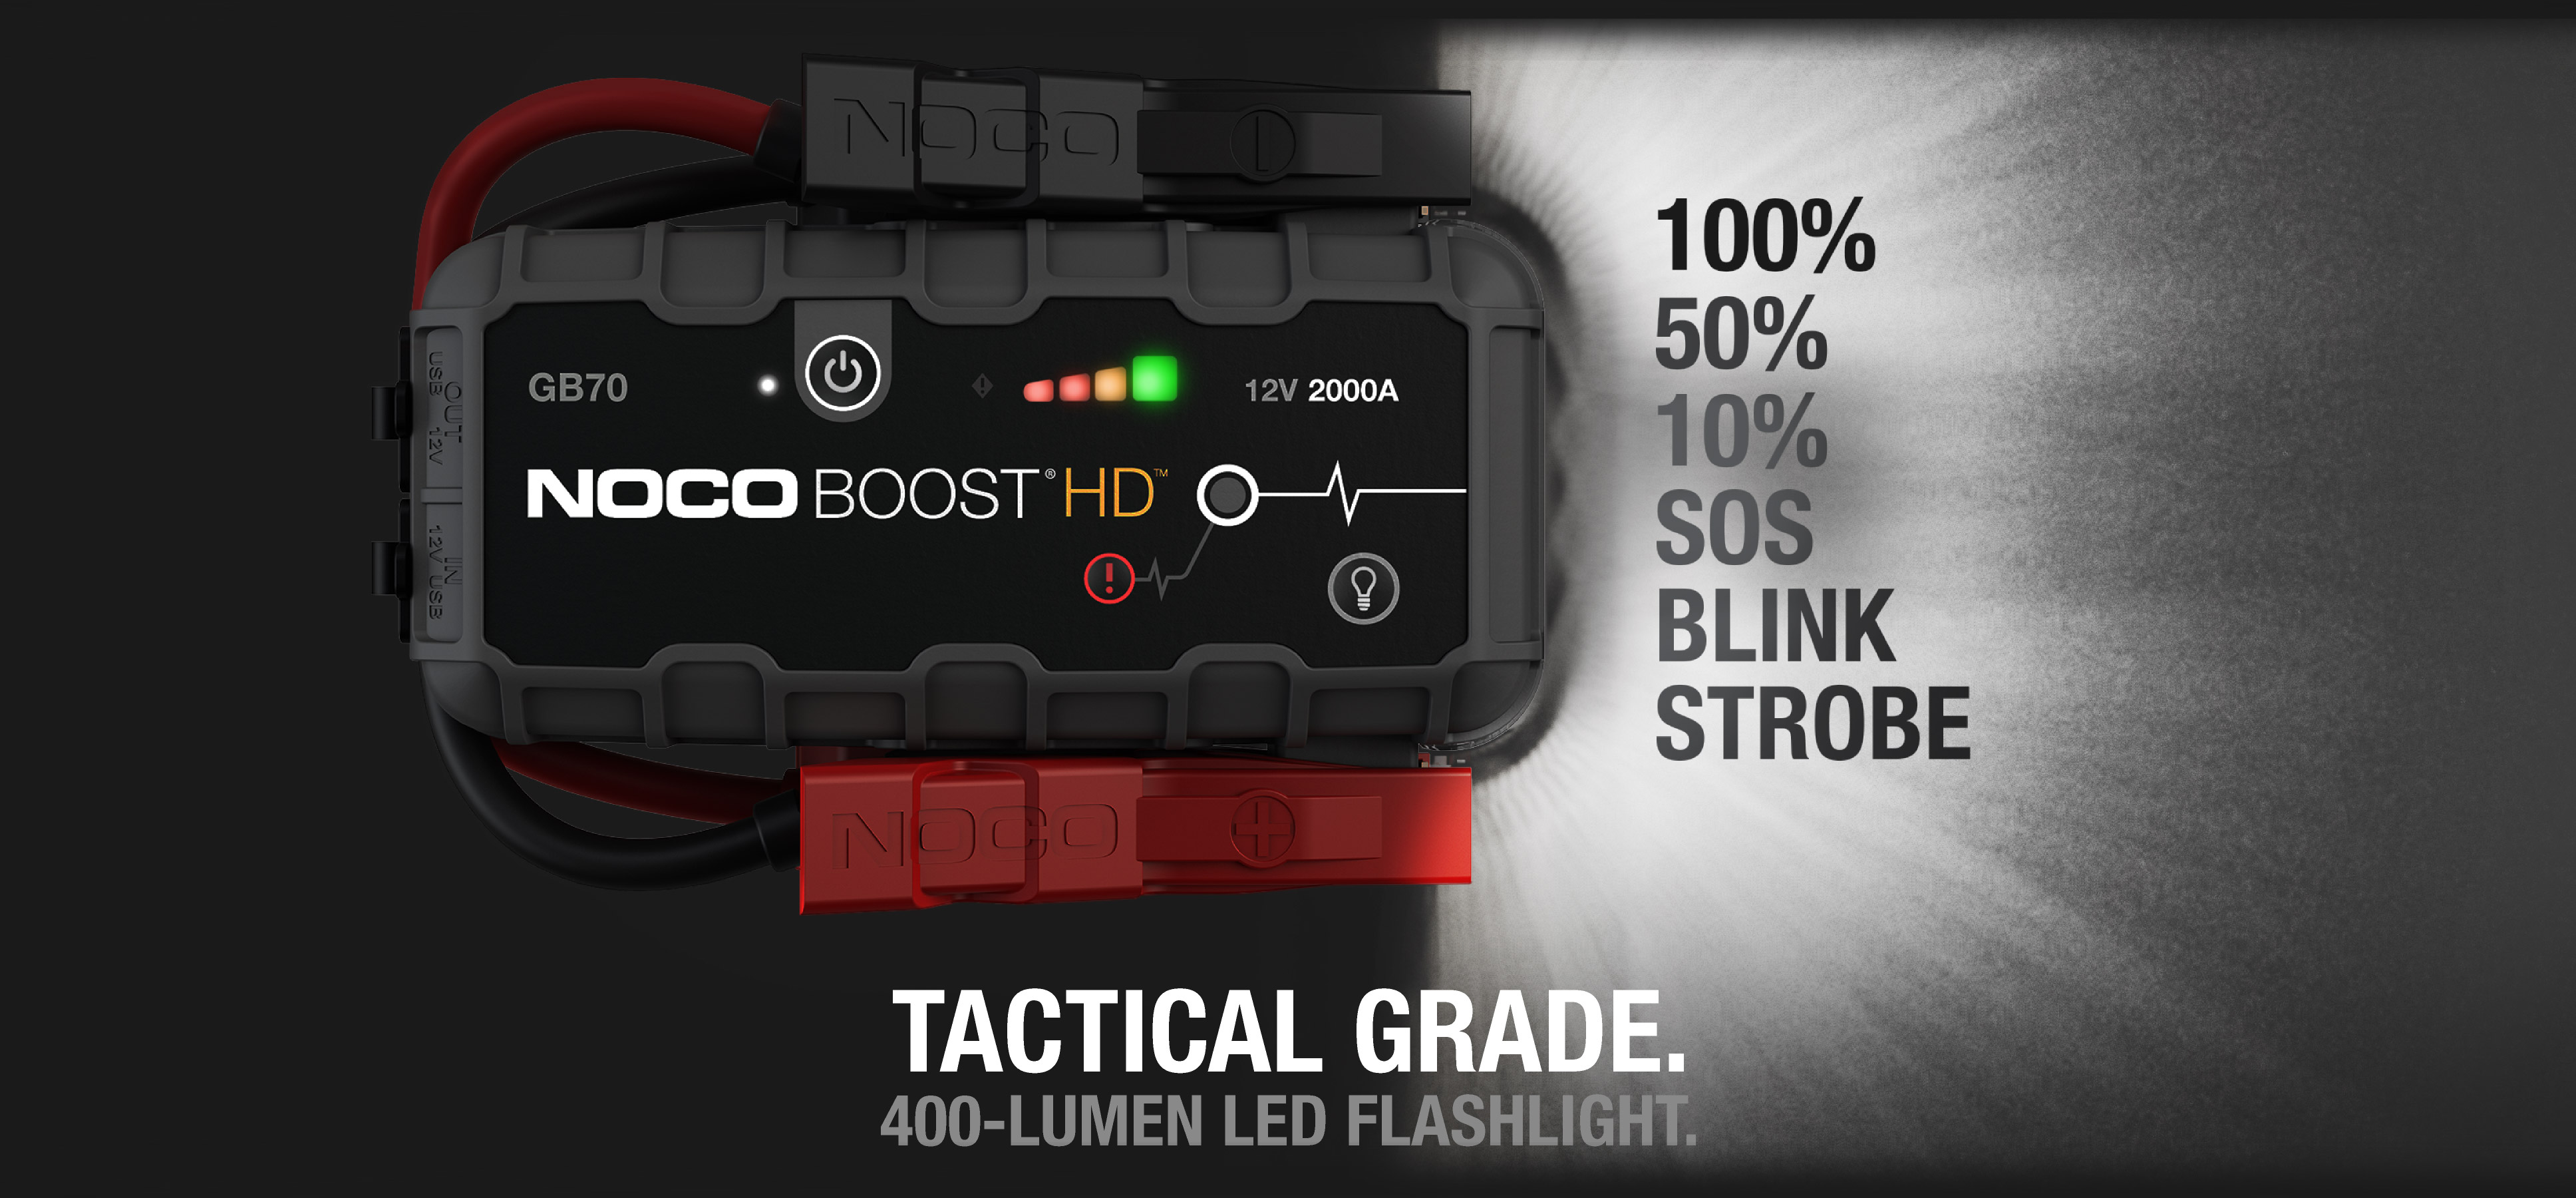 noco-gb70-boost-hd-400-lumen-led-flashlight-for-emergency2x.jpg